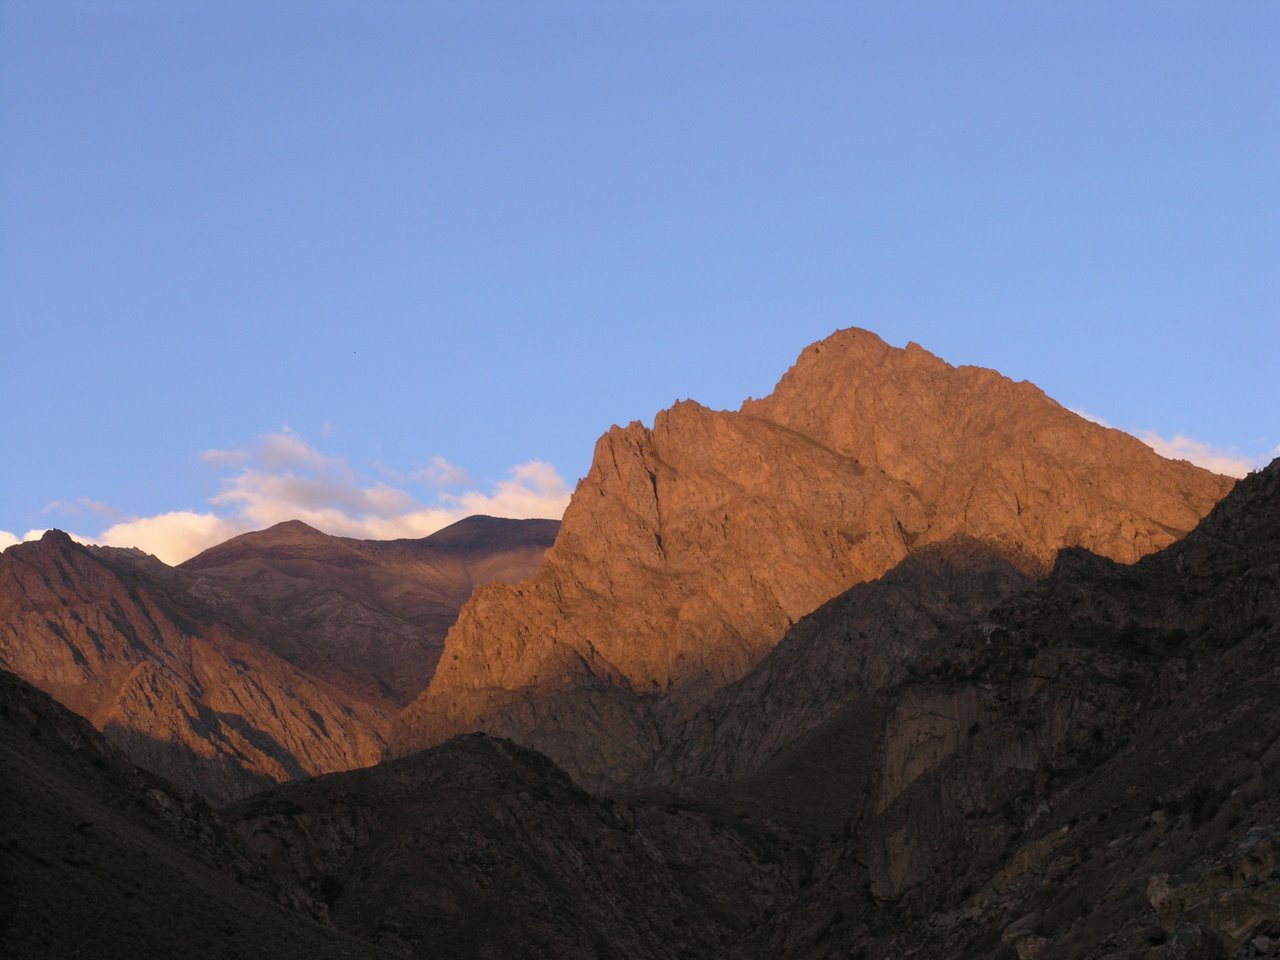  علم کوه - سه قله